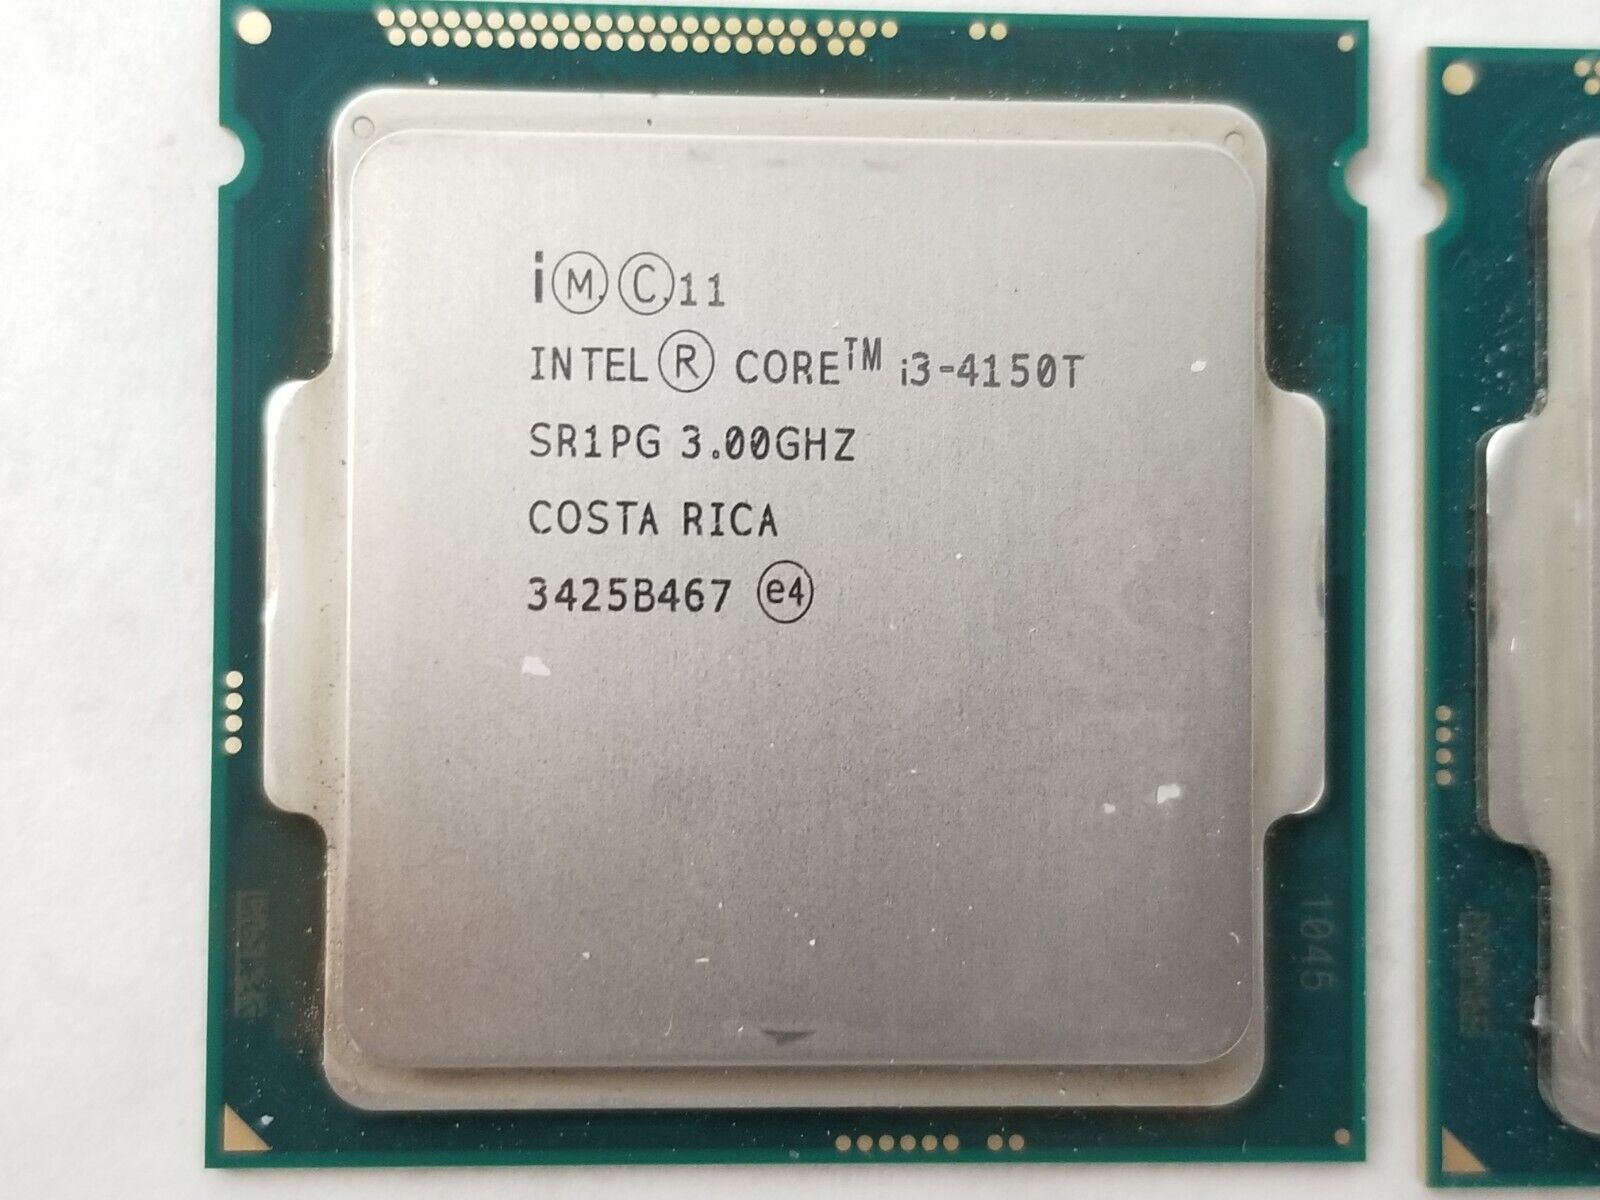 Lot of (2) Intel Core i3-4150T SR1PG 3.0GHz Dual-Core LGA1150 CPU Processor